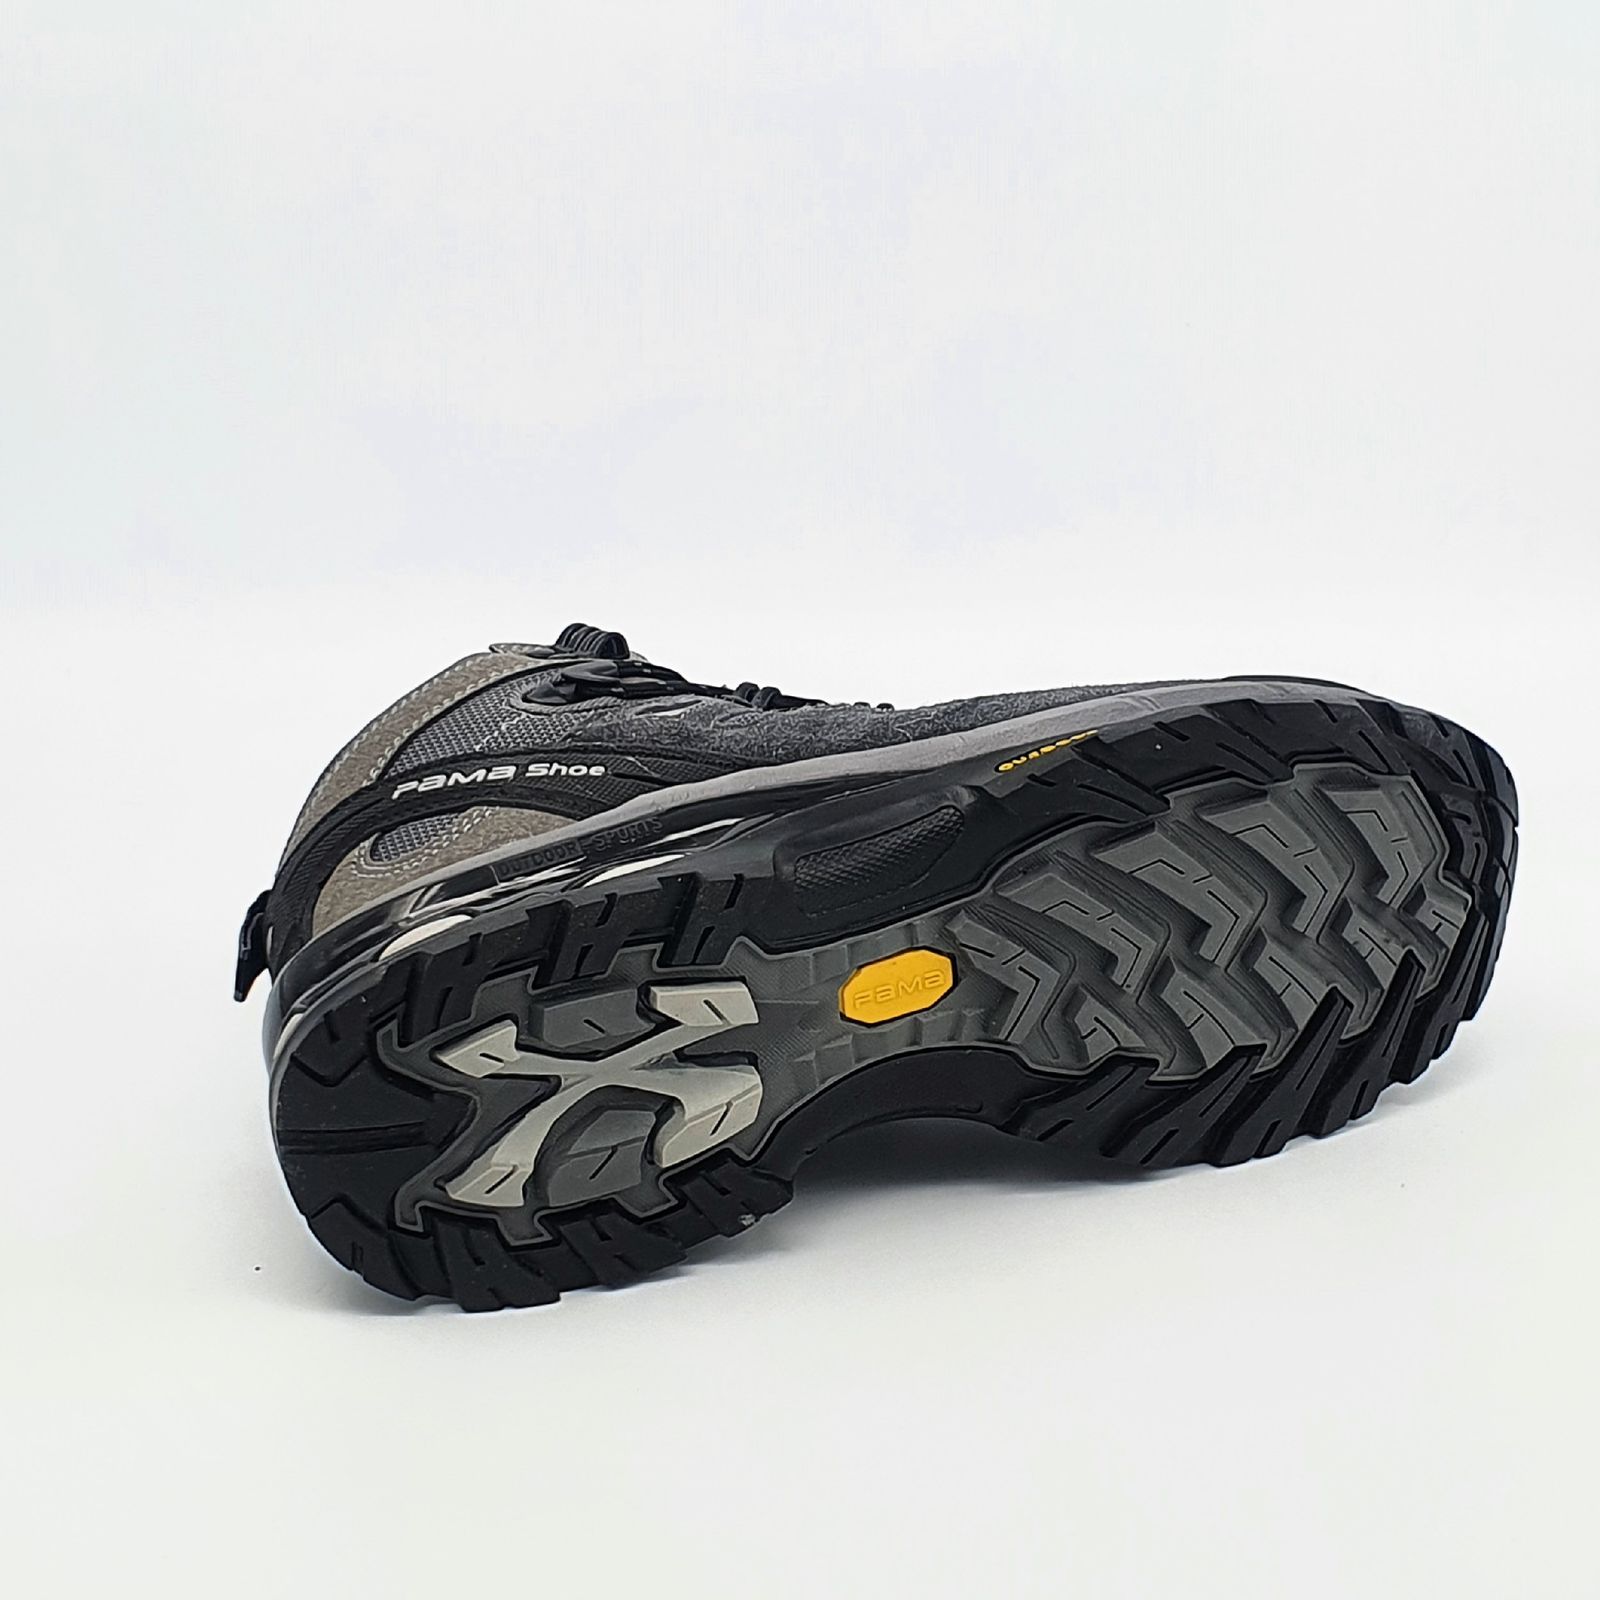 کفش کوهنوردی مردانه پاما مدل NBS-829 کد G1642 -  - 9